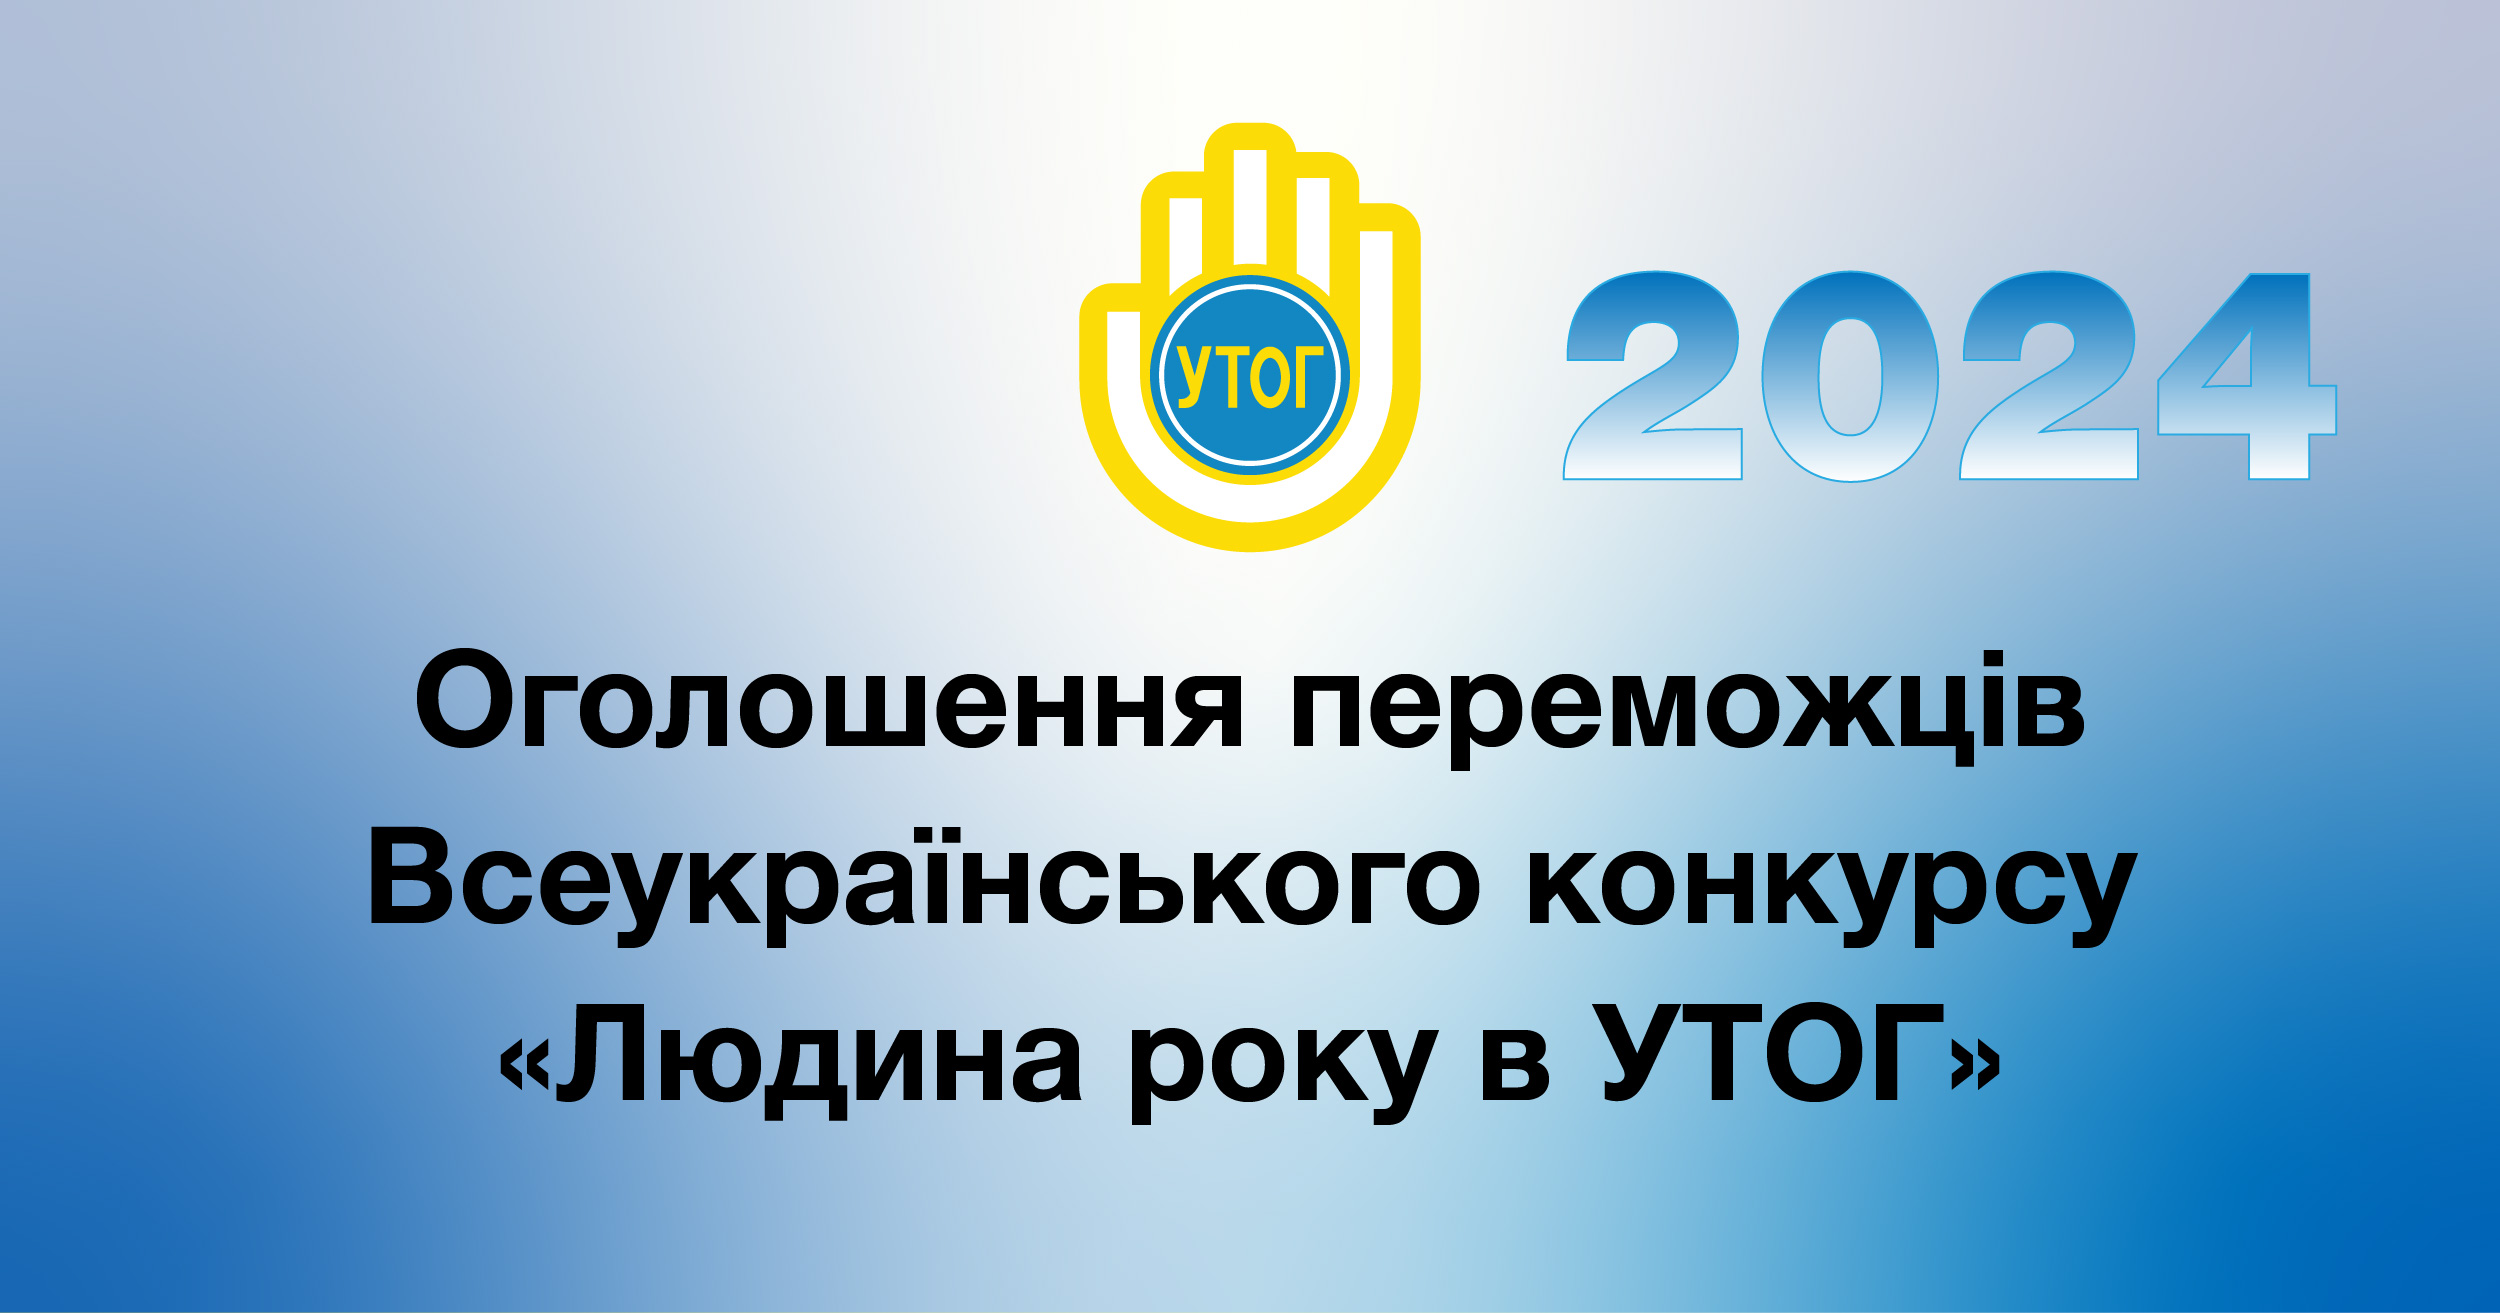 Оголошення переможців Всеукраїнського конкурсу "Людина року в УТОГ" – 2024